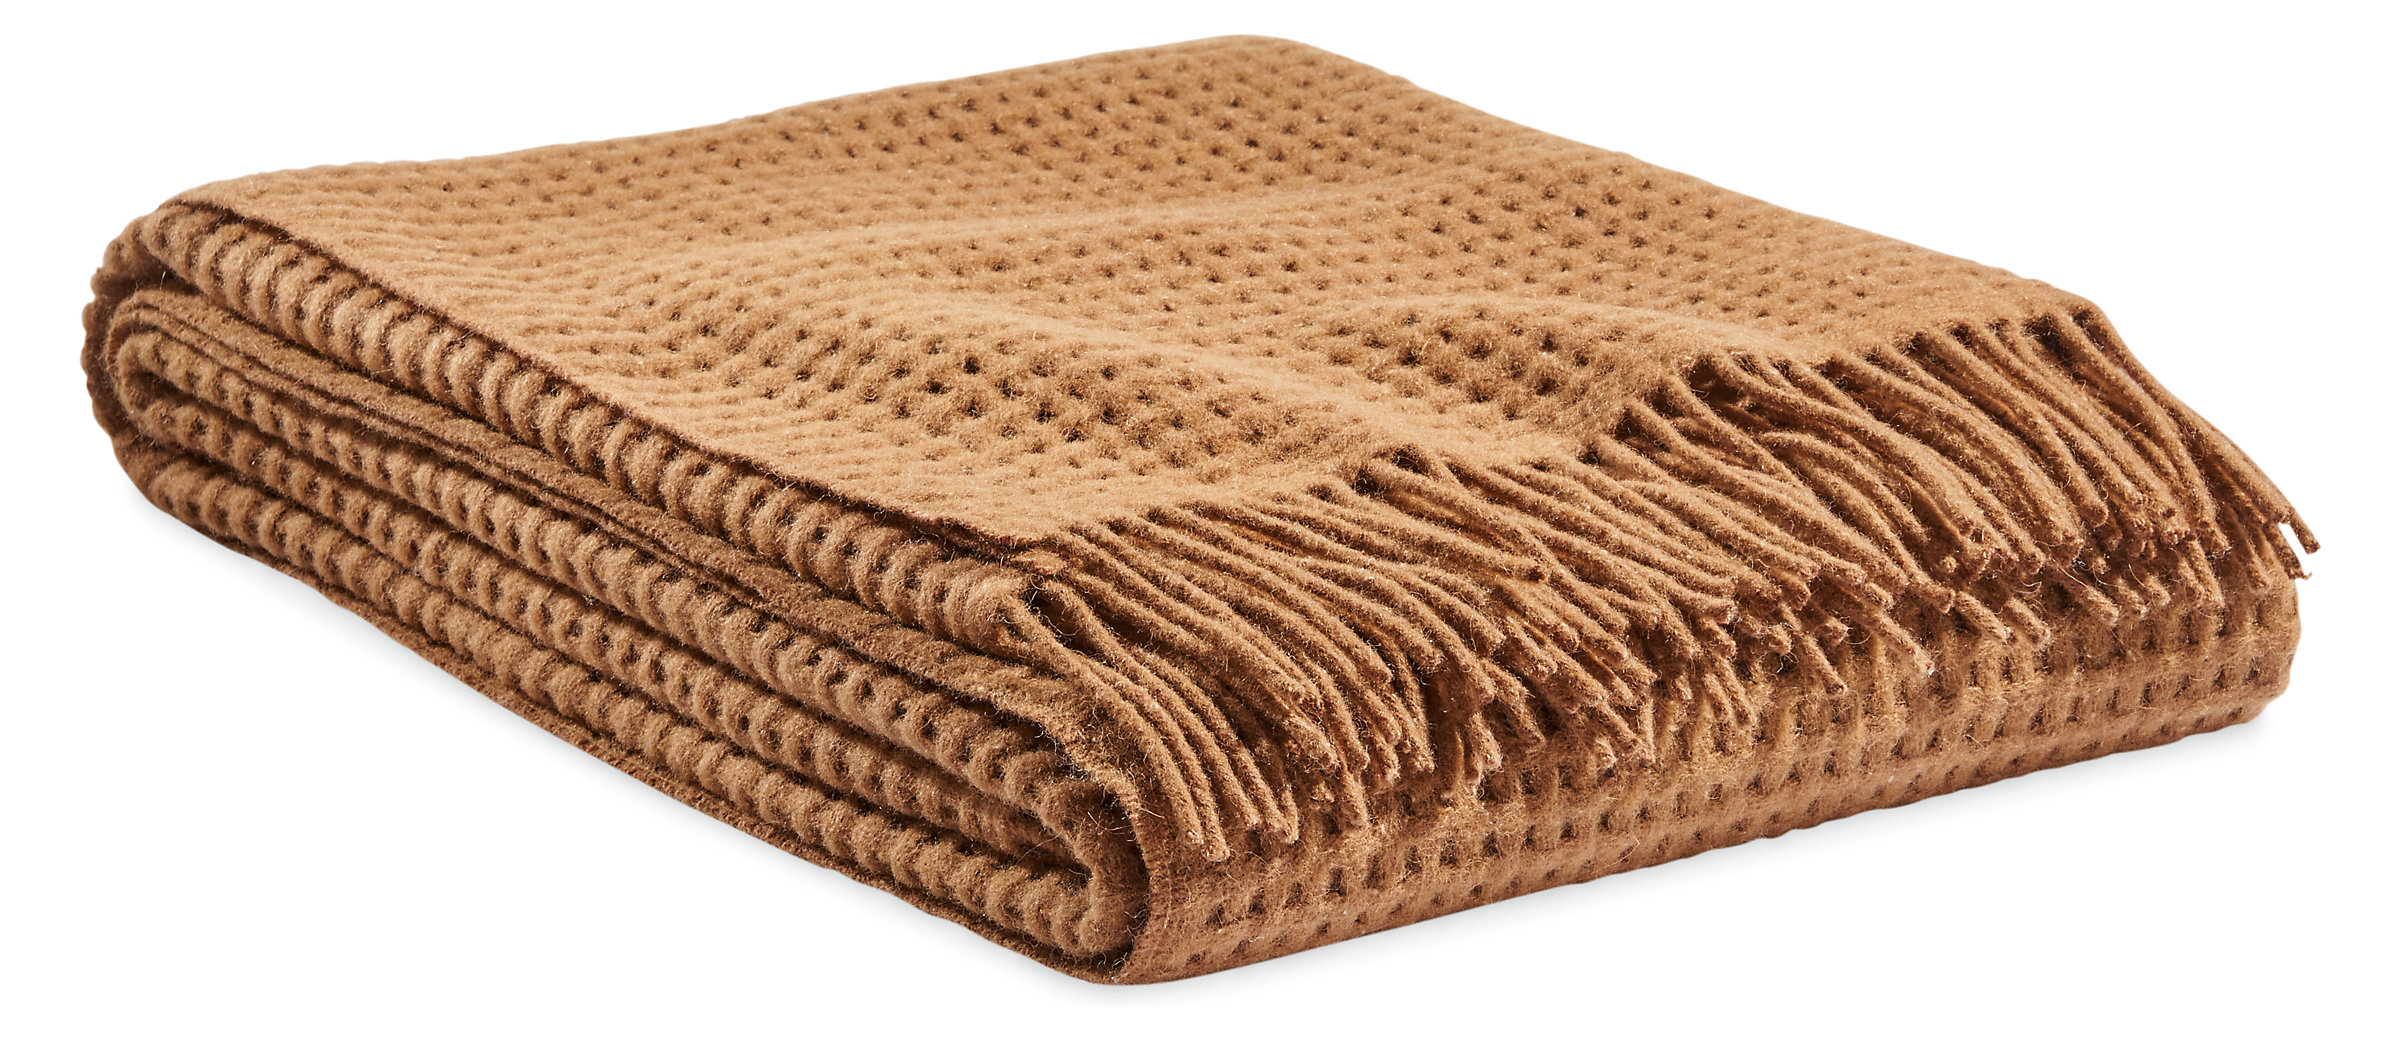 Homage Basketweave Throw Blanket